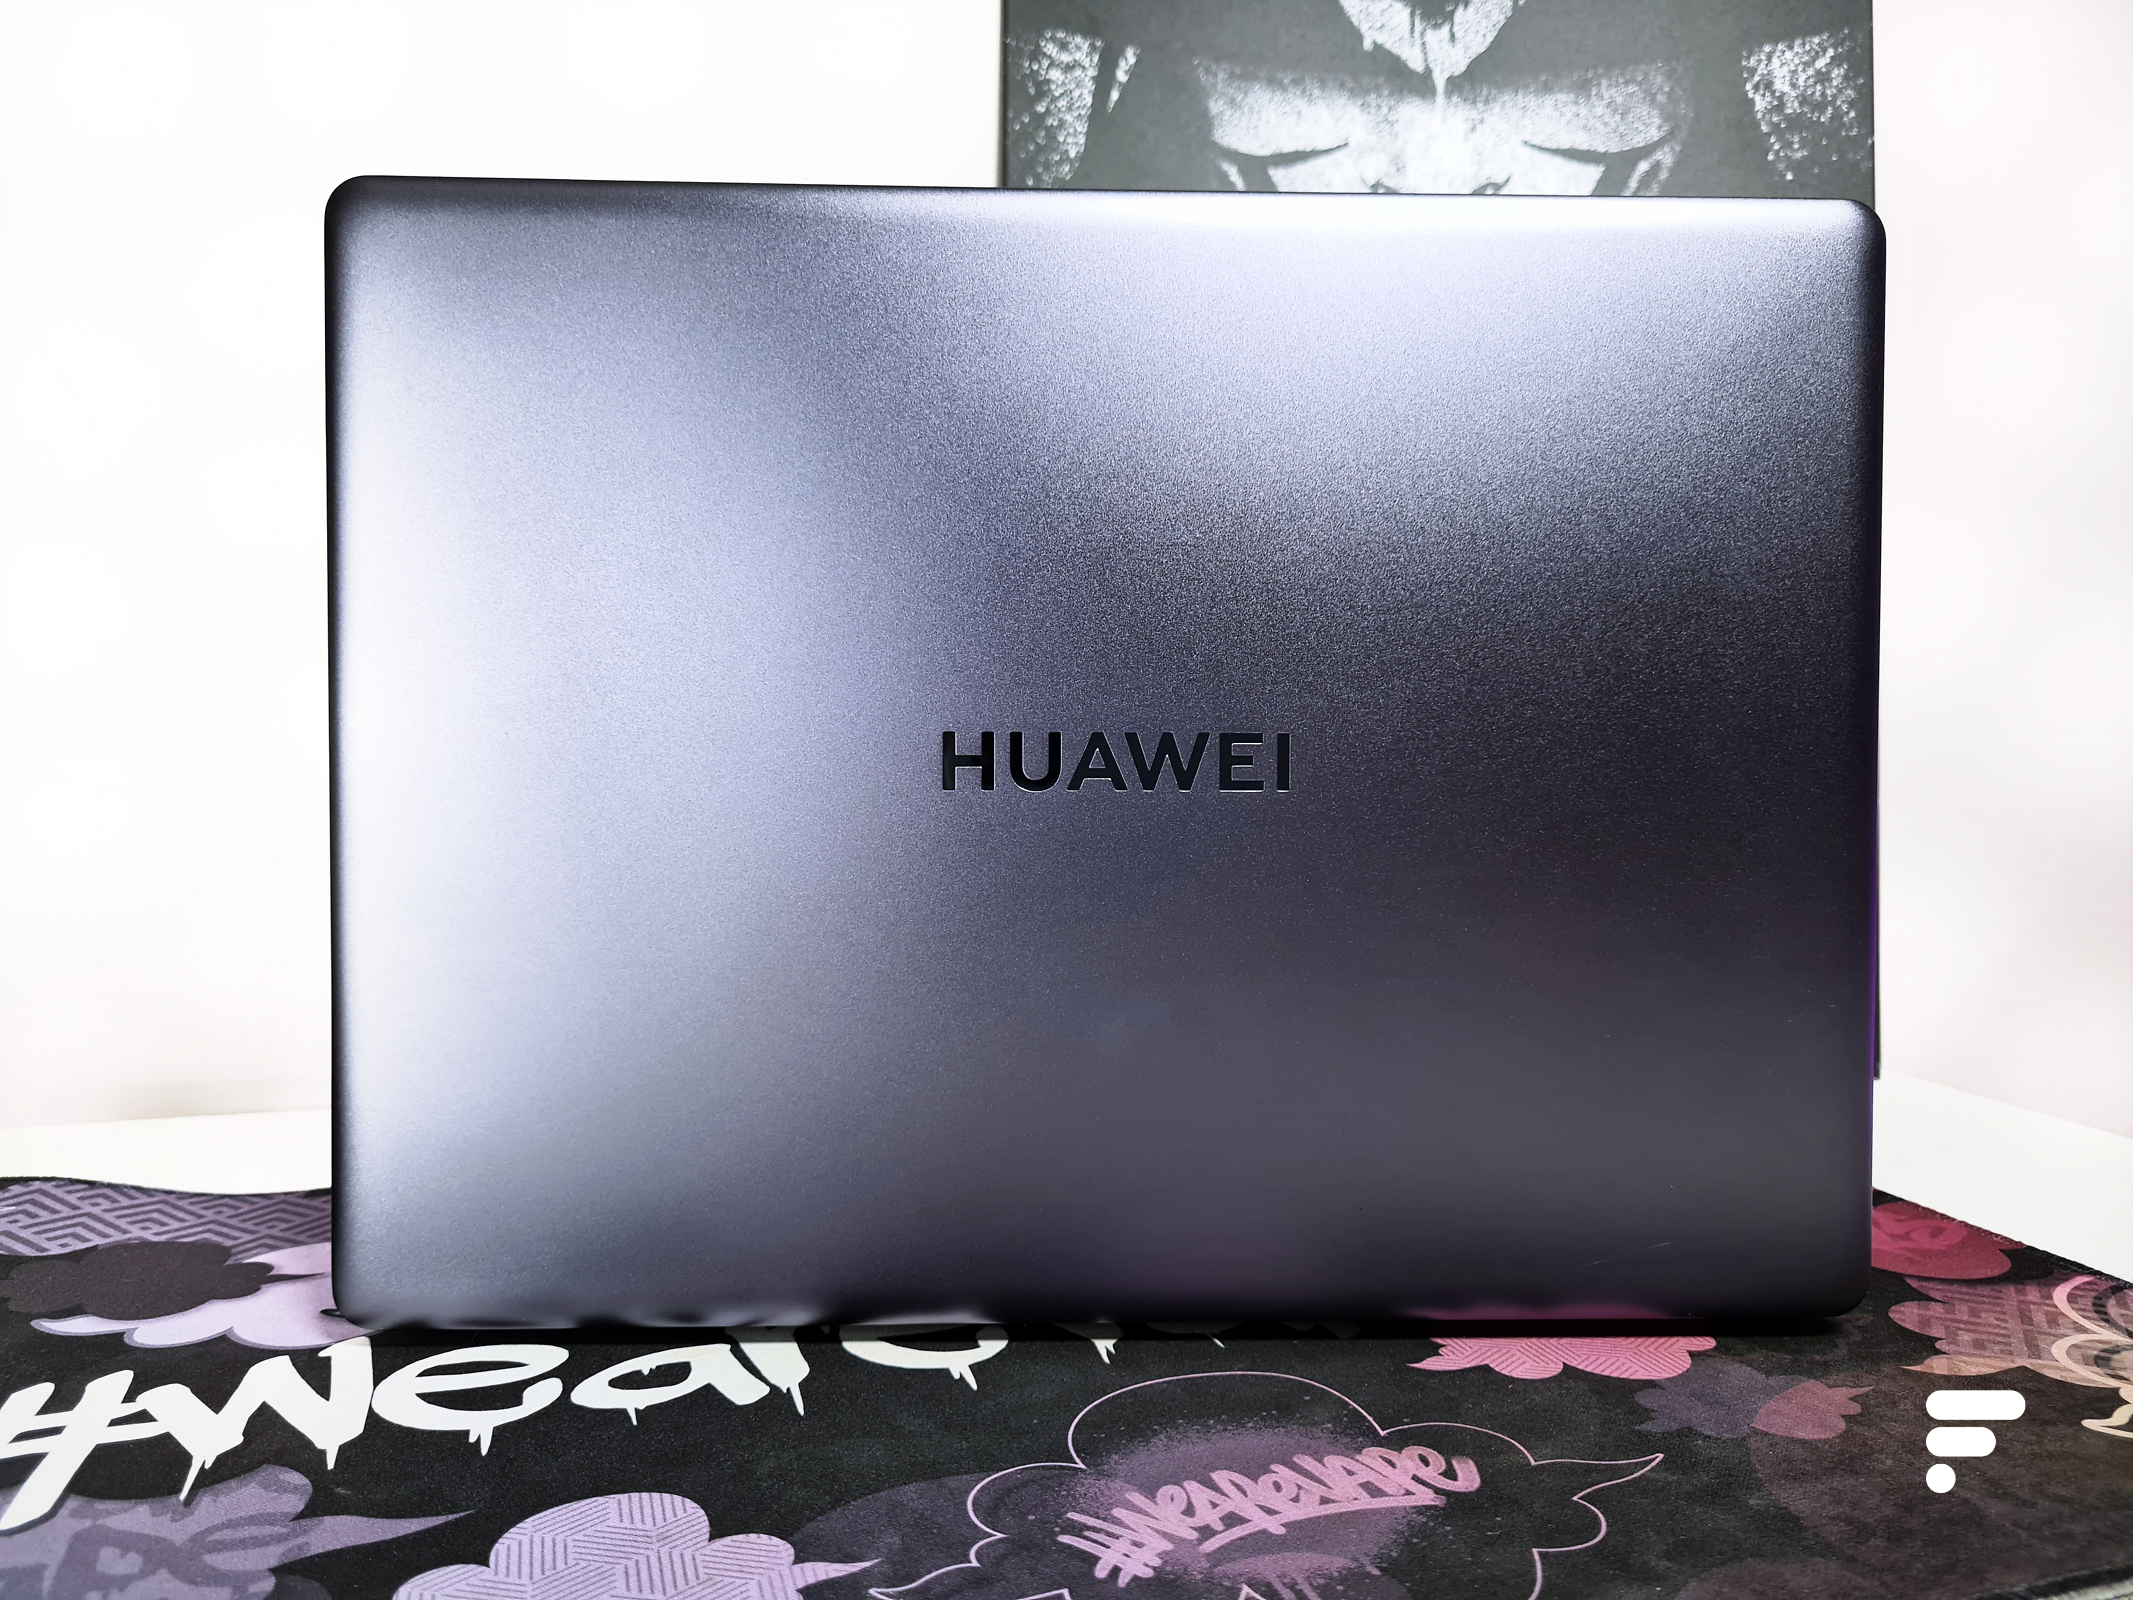 Huawei cartonne avec cet ordinateur portable enfin en promotion